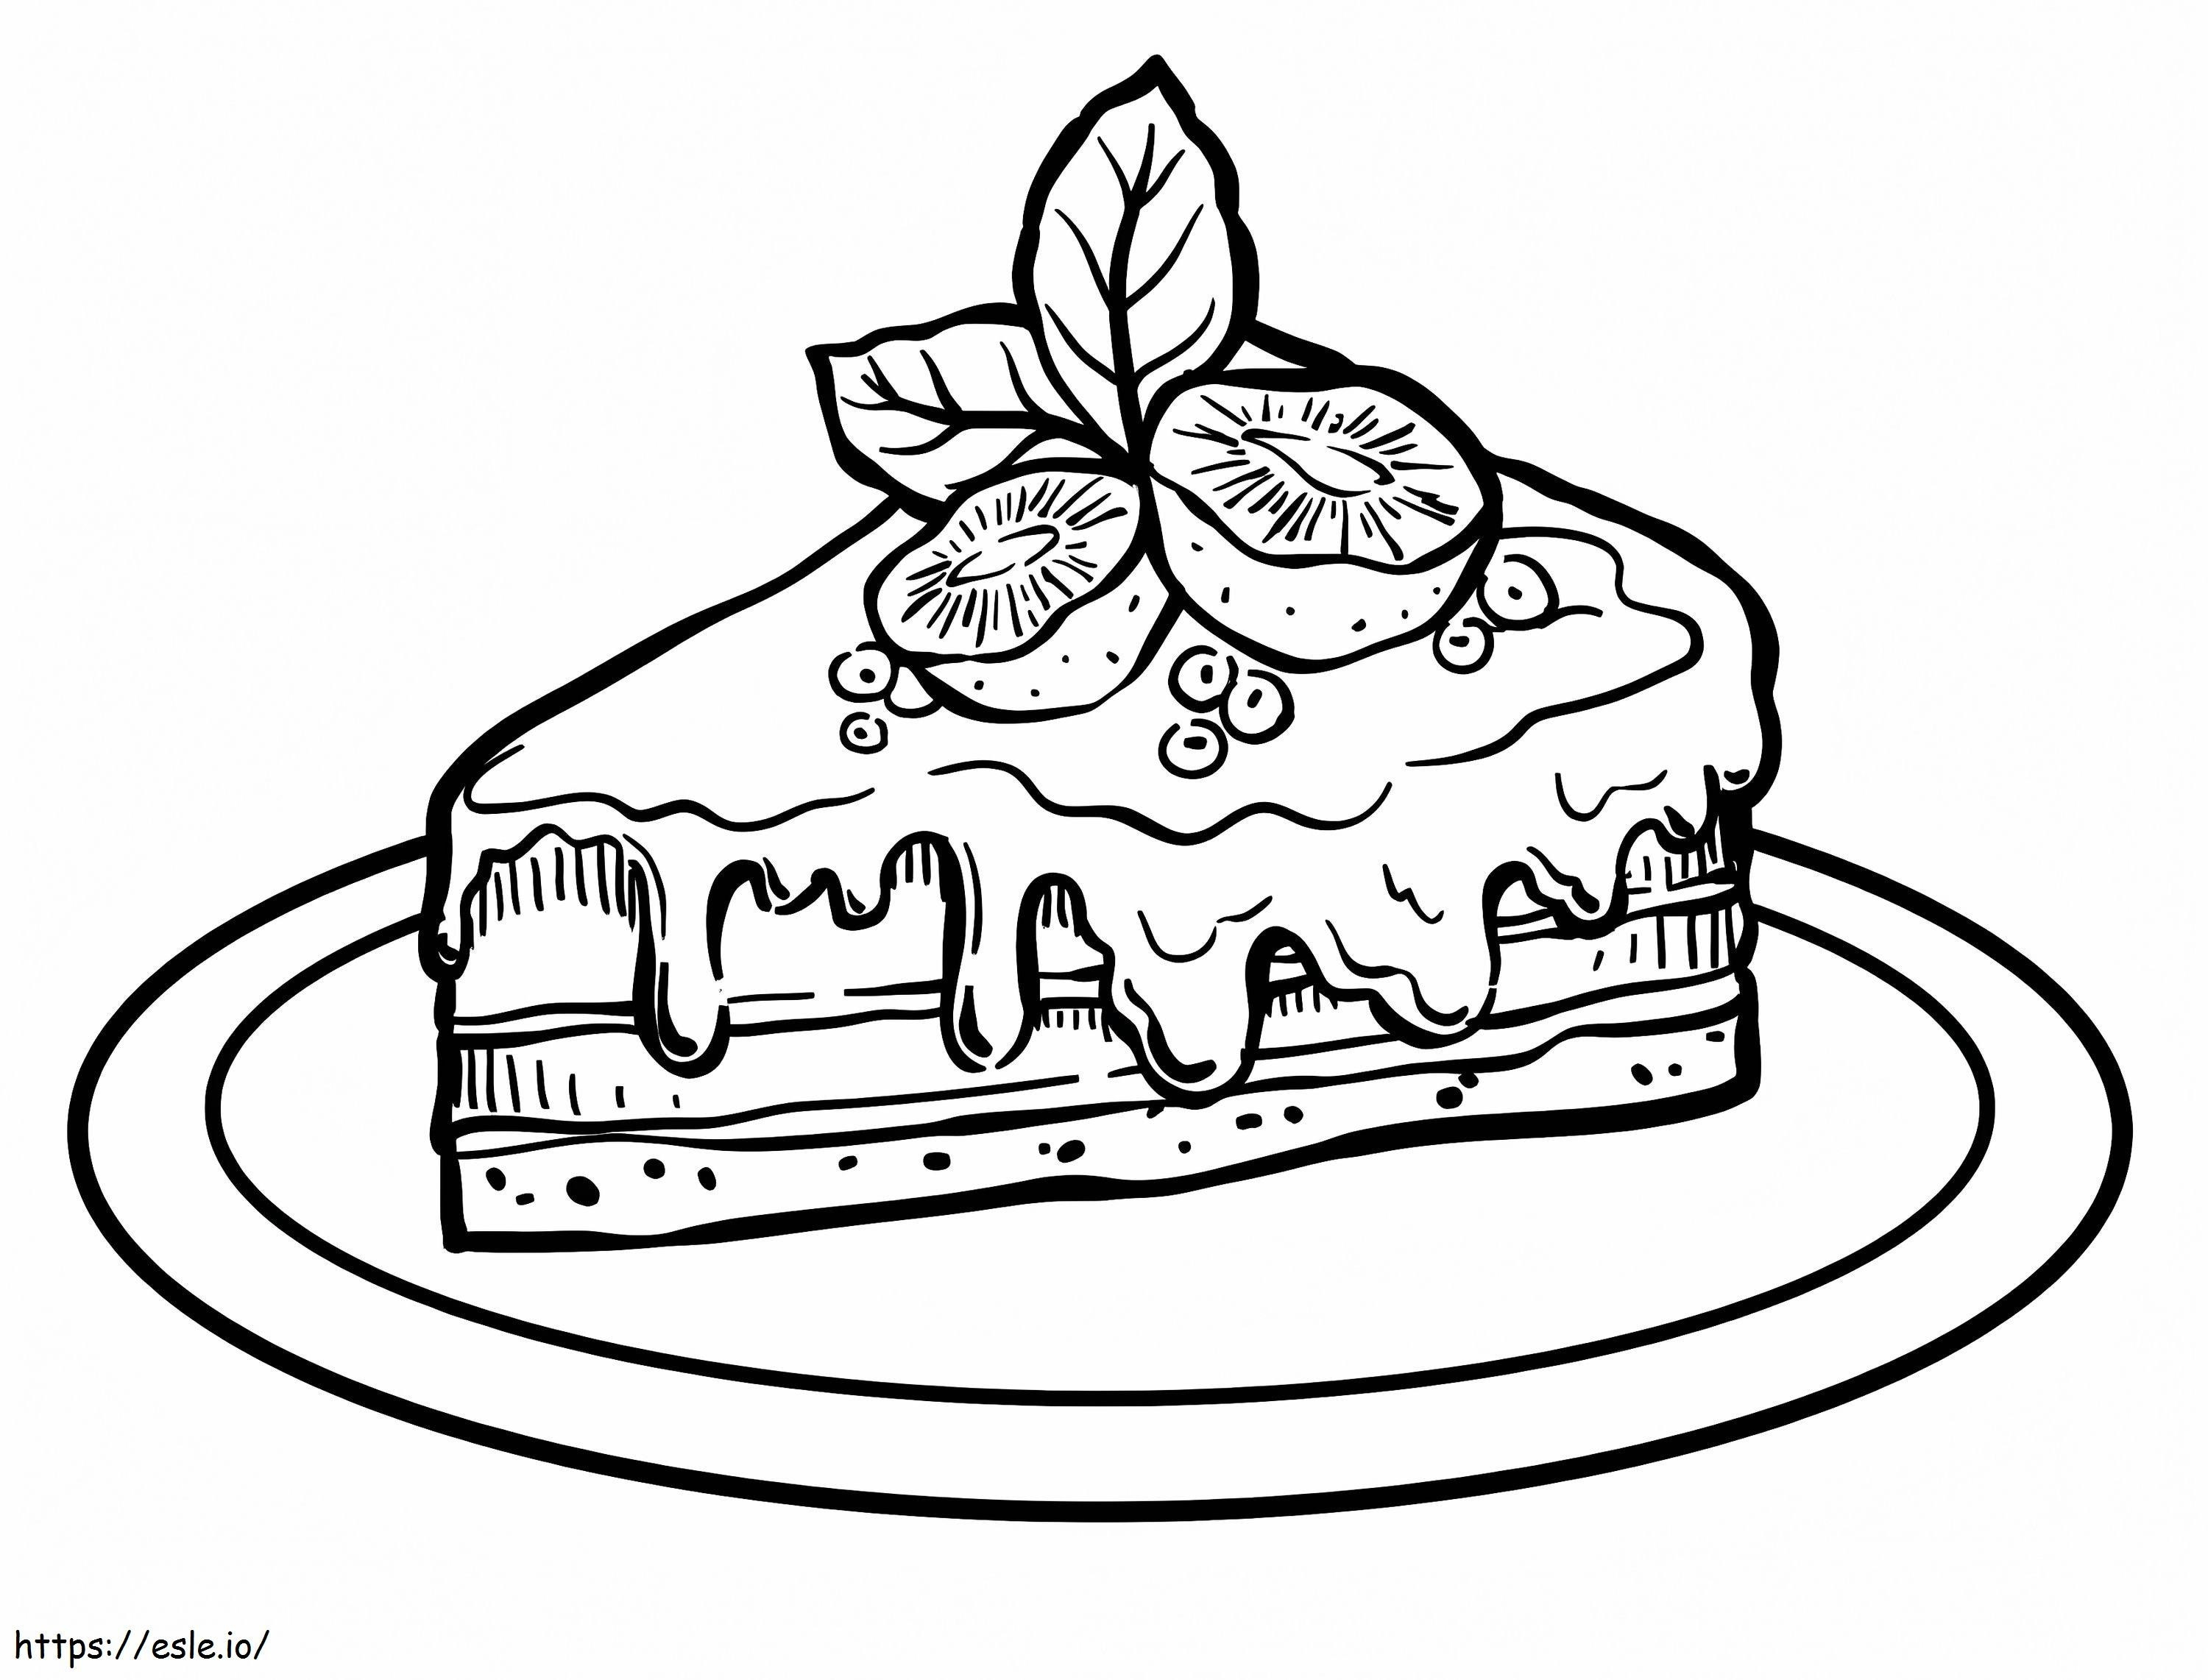 Pedazo de pastel con kiwis para colorear